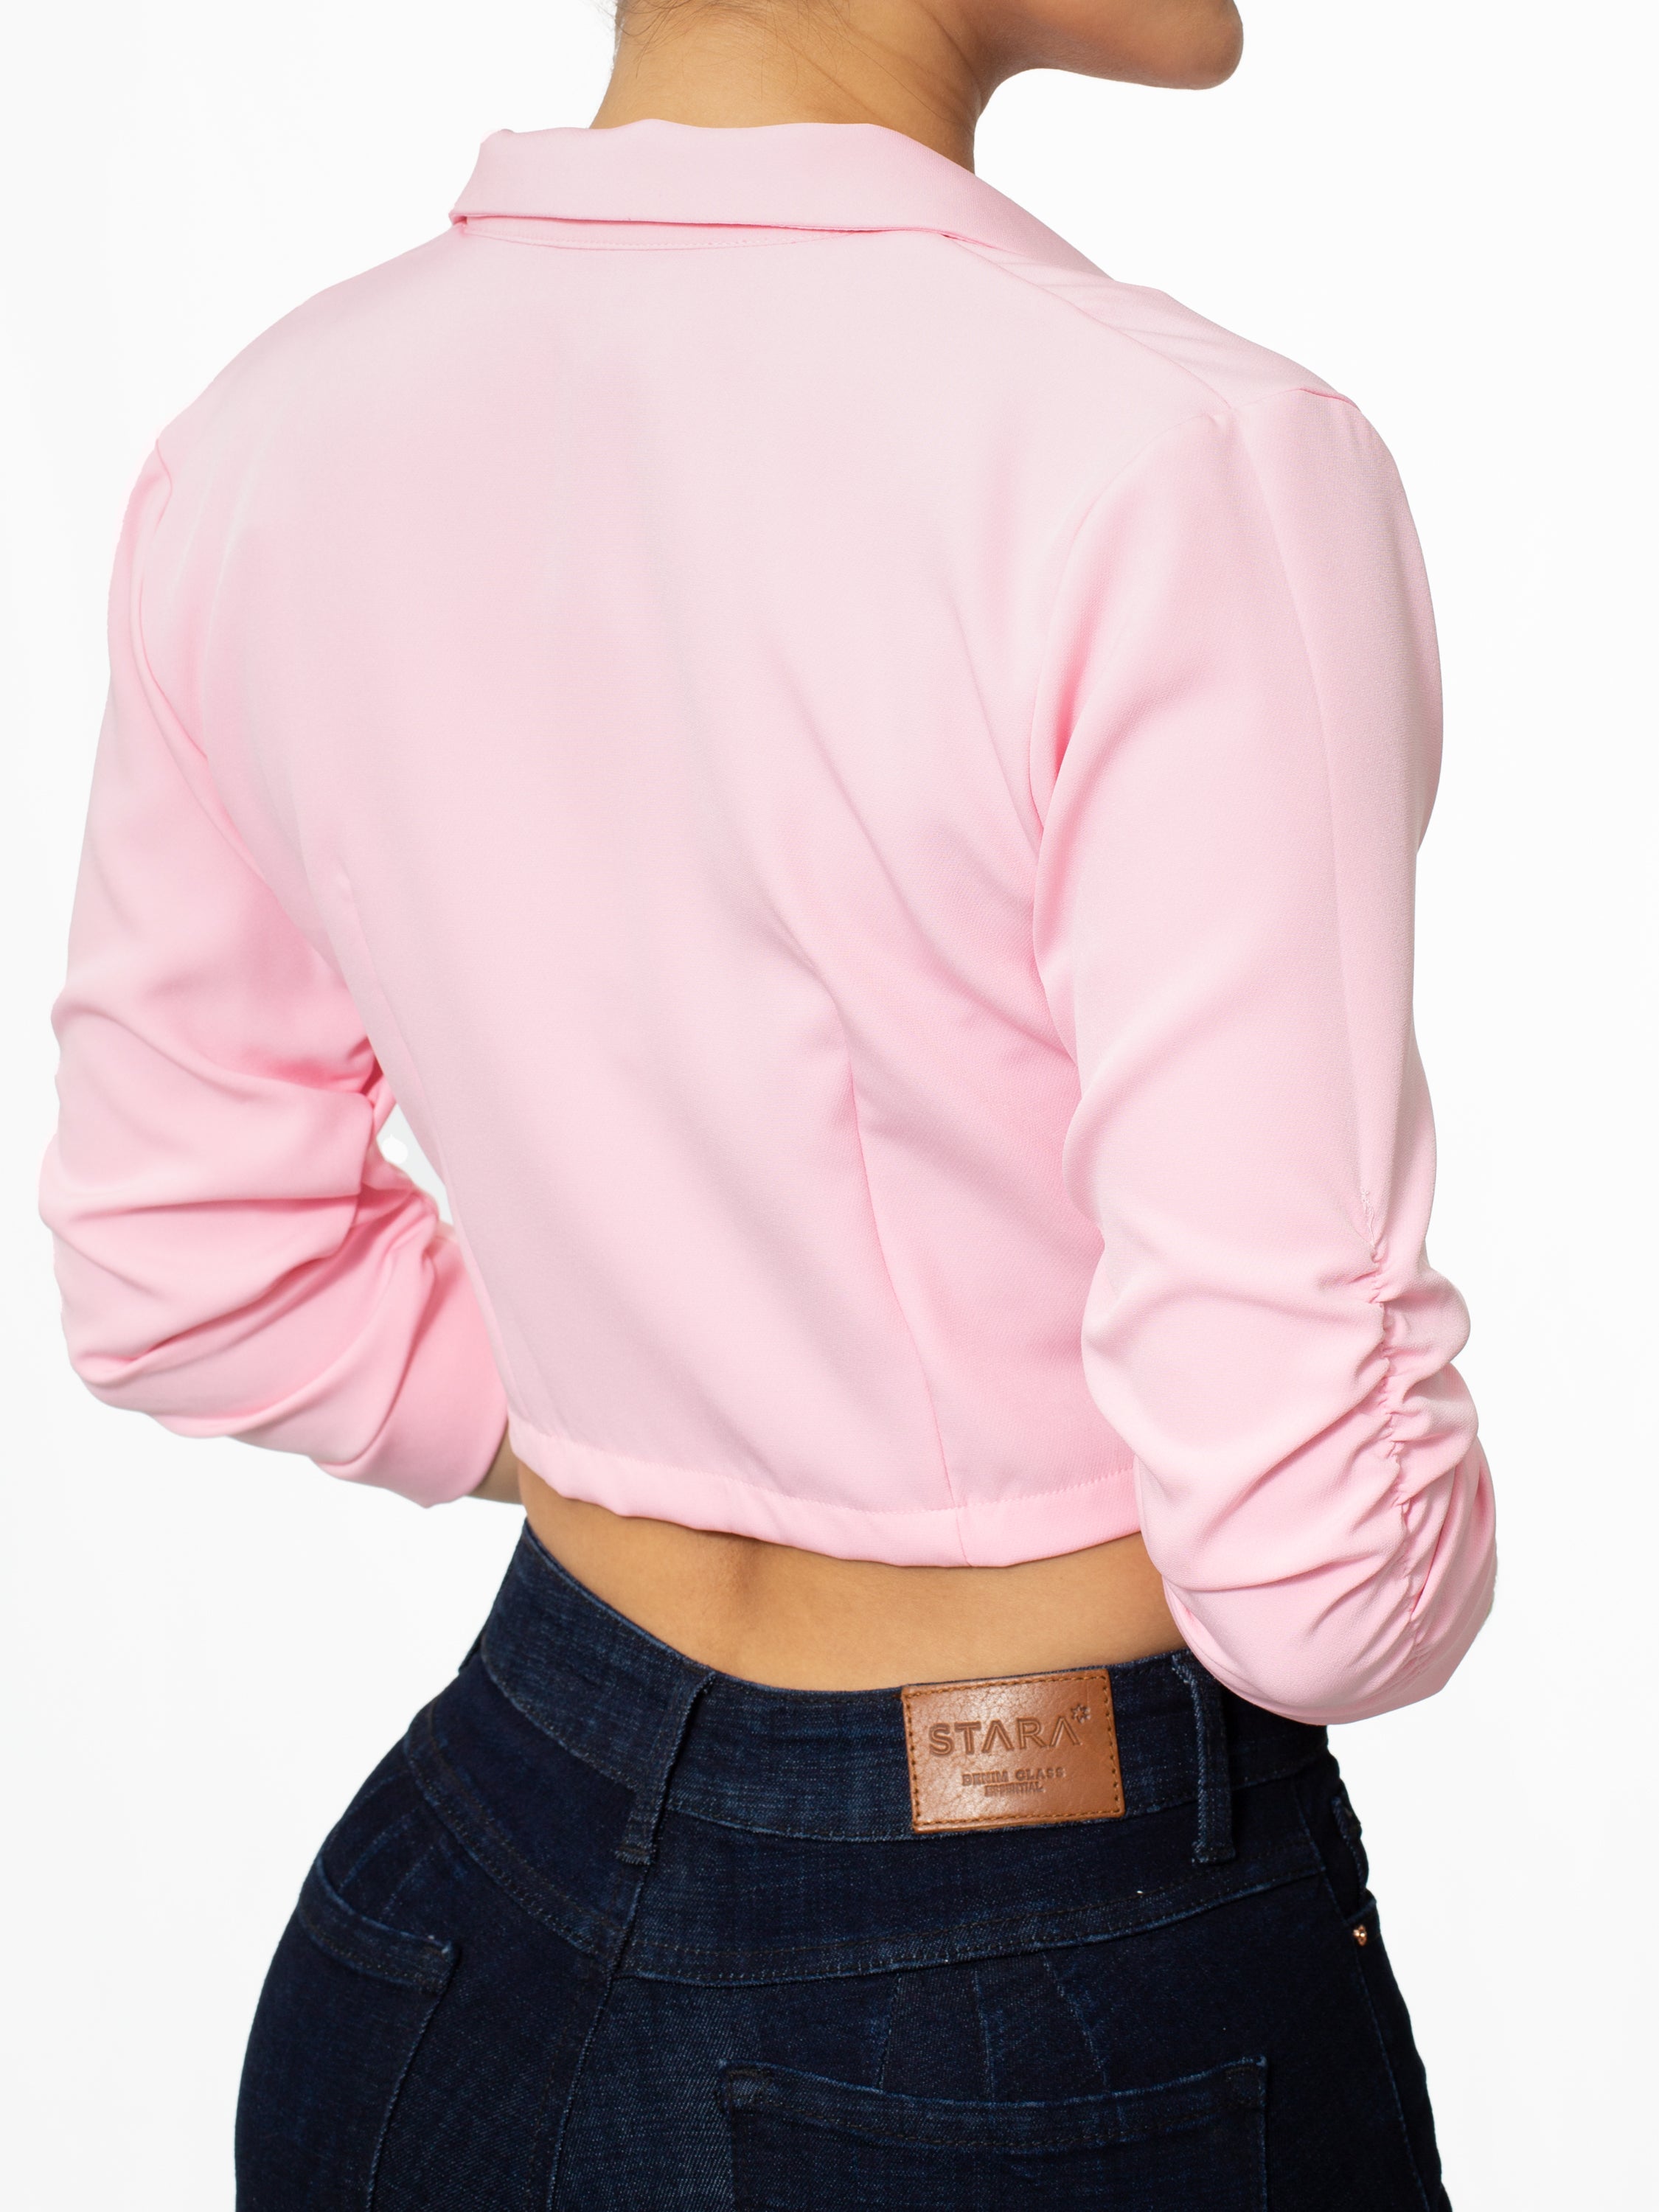 Blazer corto rosado con detalle en mangas